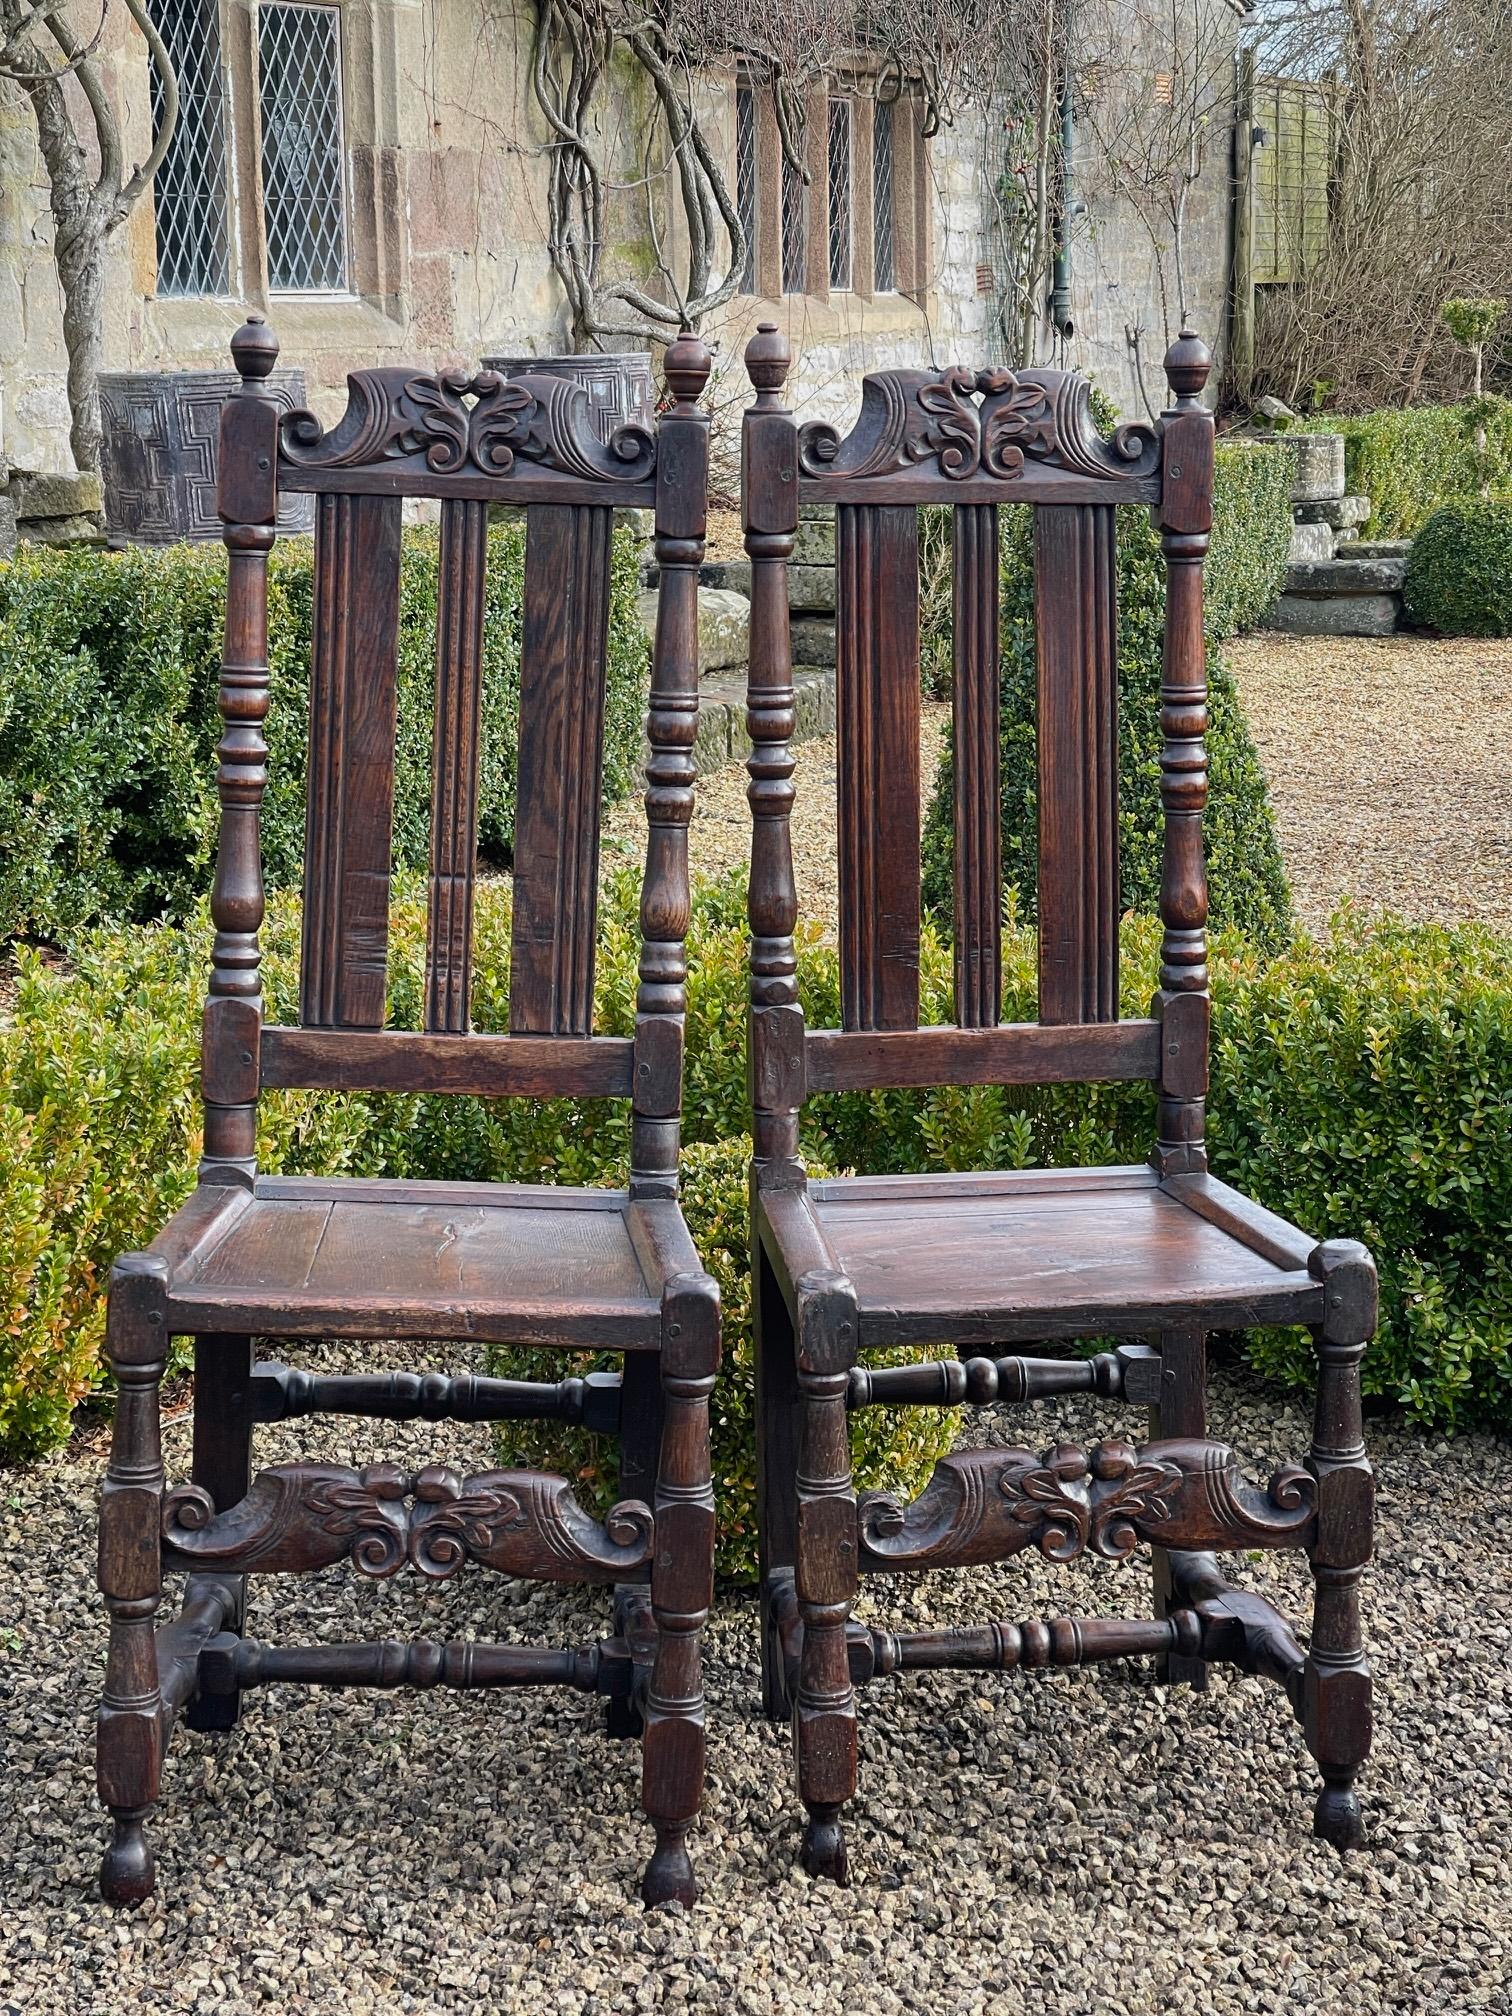 Ein feines Paar Eichenstühle aus dem 17. Jahrhundert mit geformten Kammschienen und vorderen Abschnitten, die alle eine gute Farbe und Patina aufweisen.

120 cm hoch 45 breit cm Sitz 49 cm